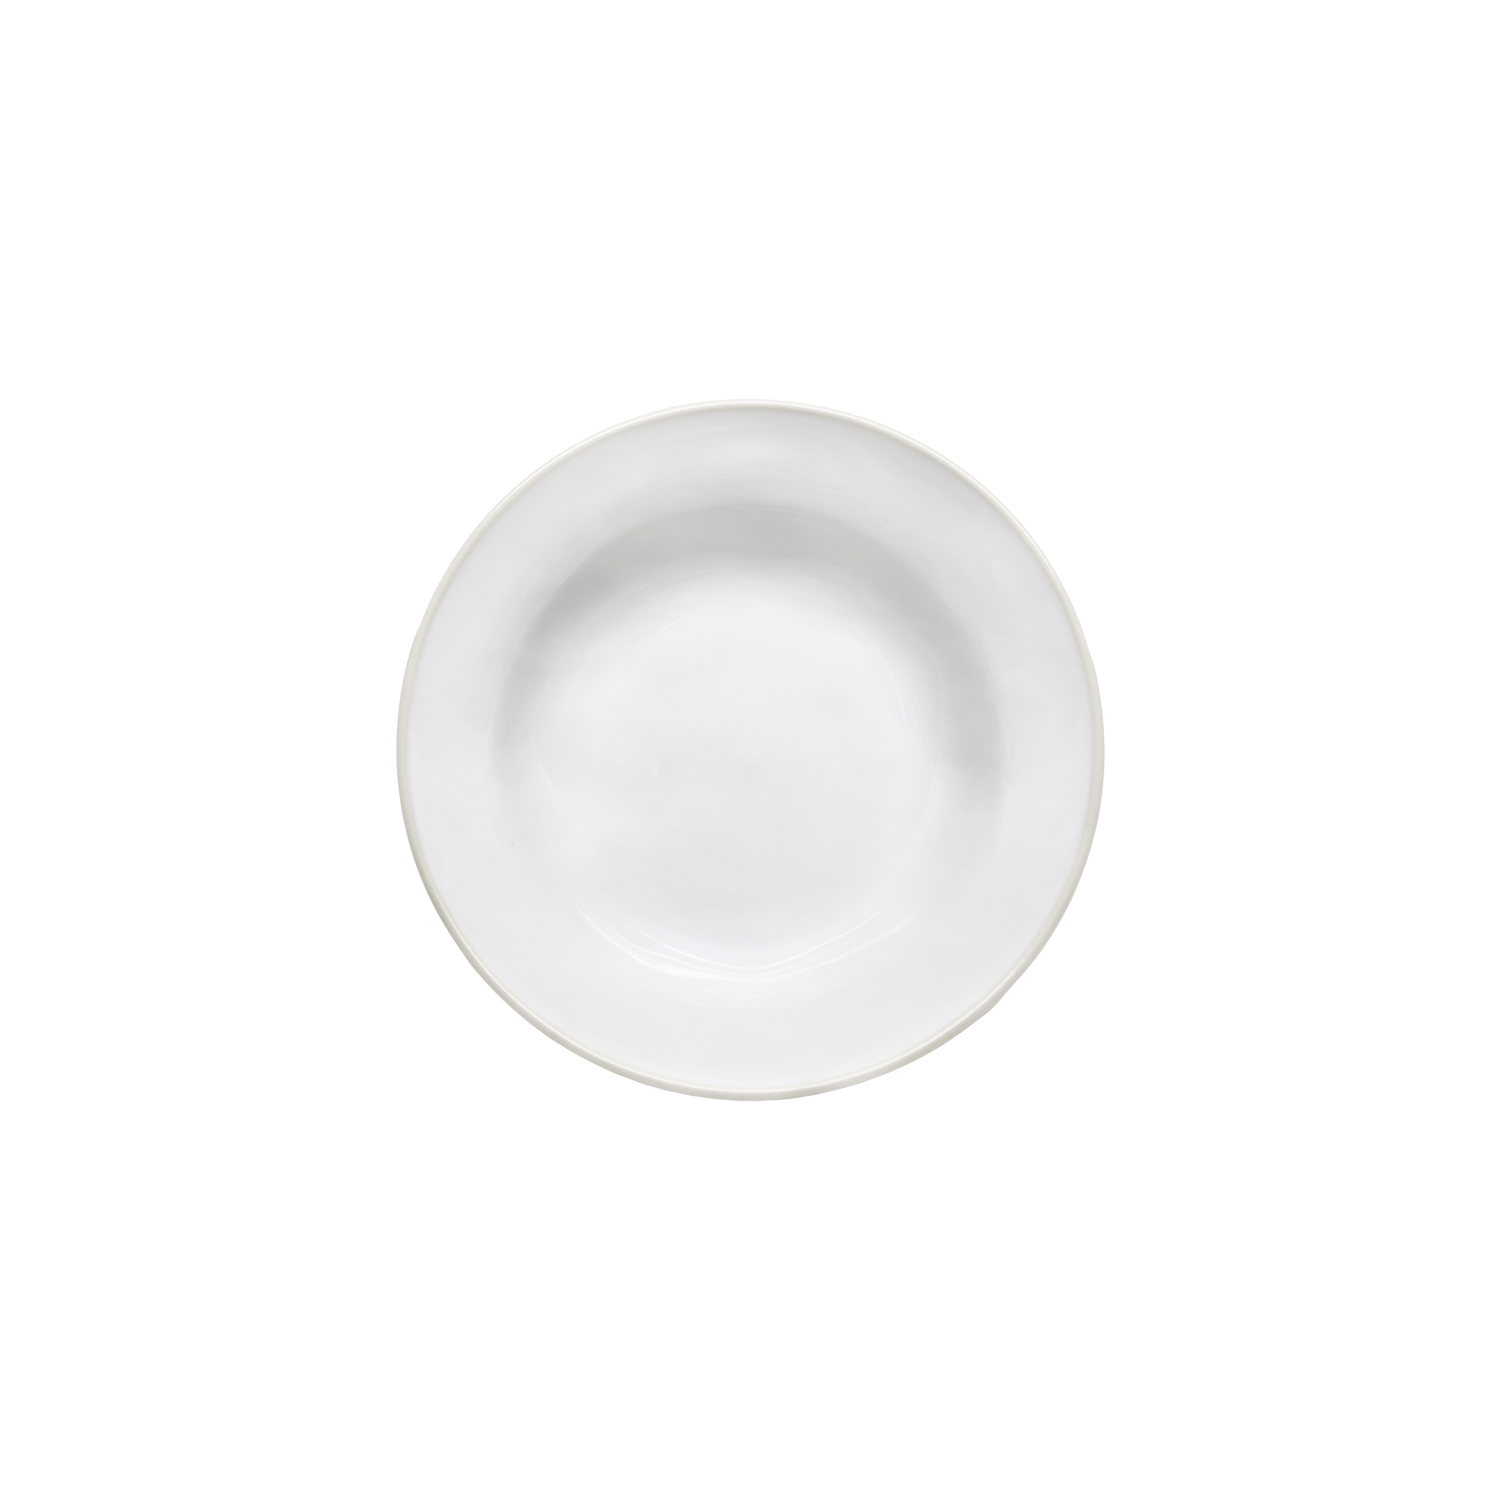 Beja White/cream Soup/pasta Plate 21cm Gift